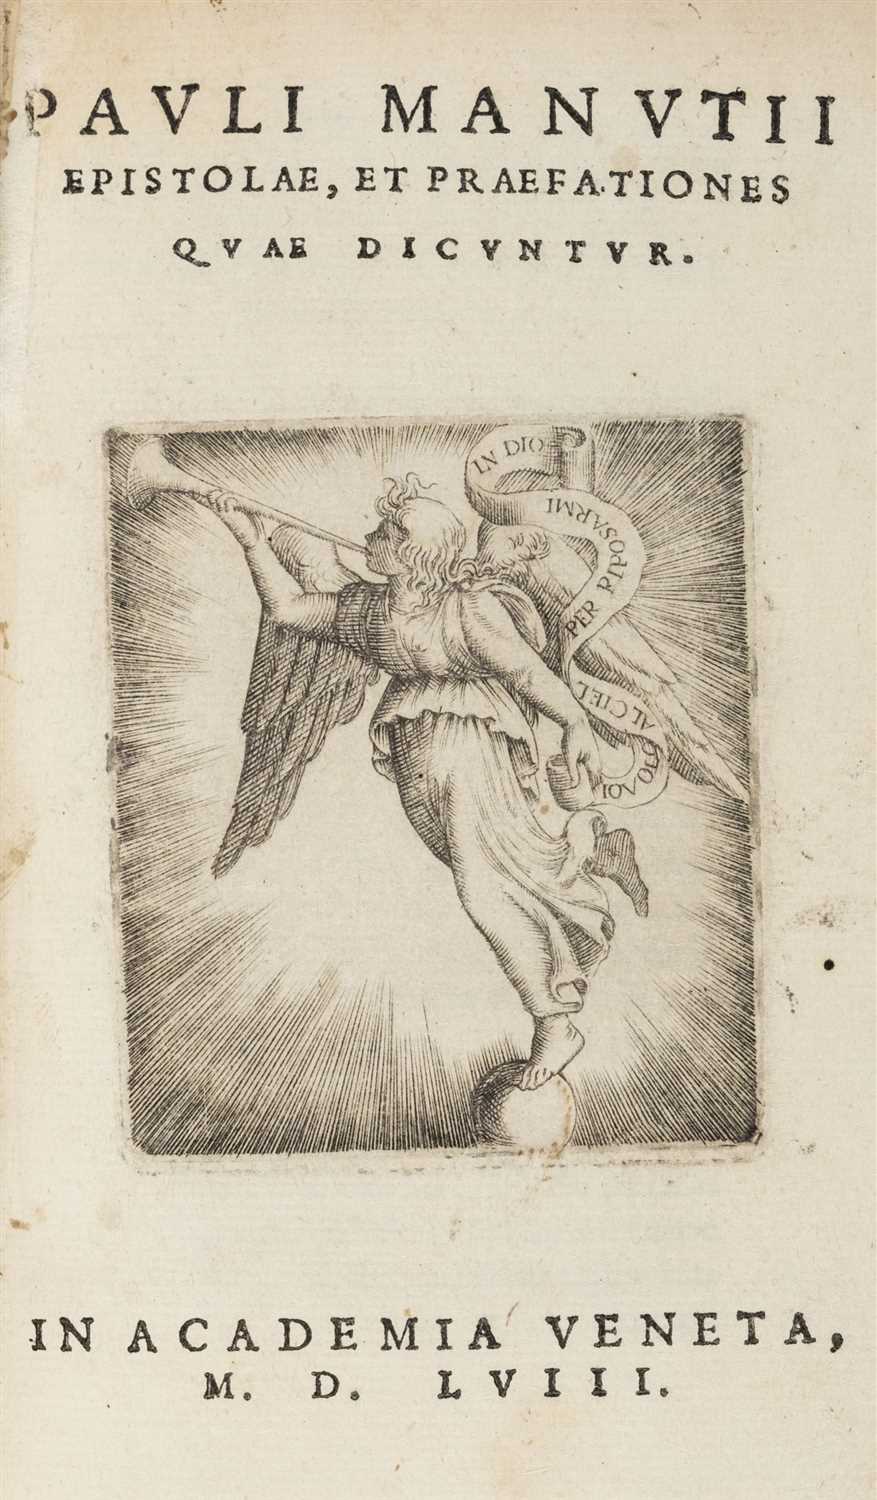 Lot 329 - Manuzio (Paolo). Epistolae, et Praefationes quae dicuntur, Venice, 1558